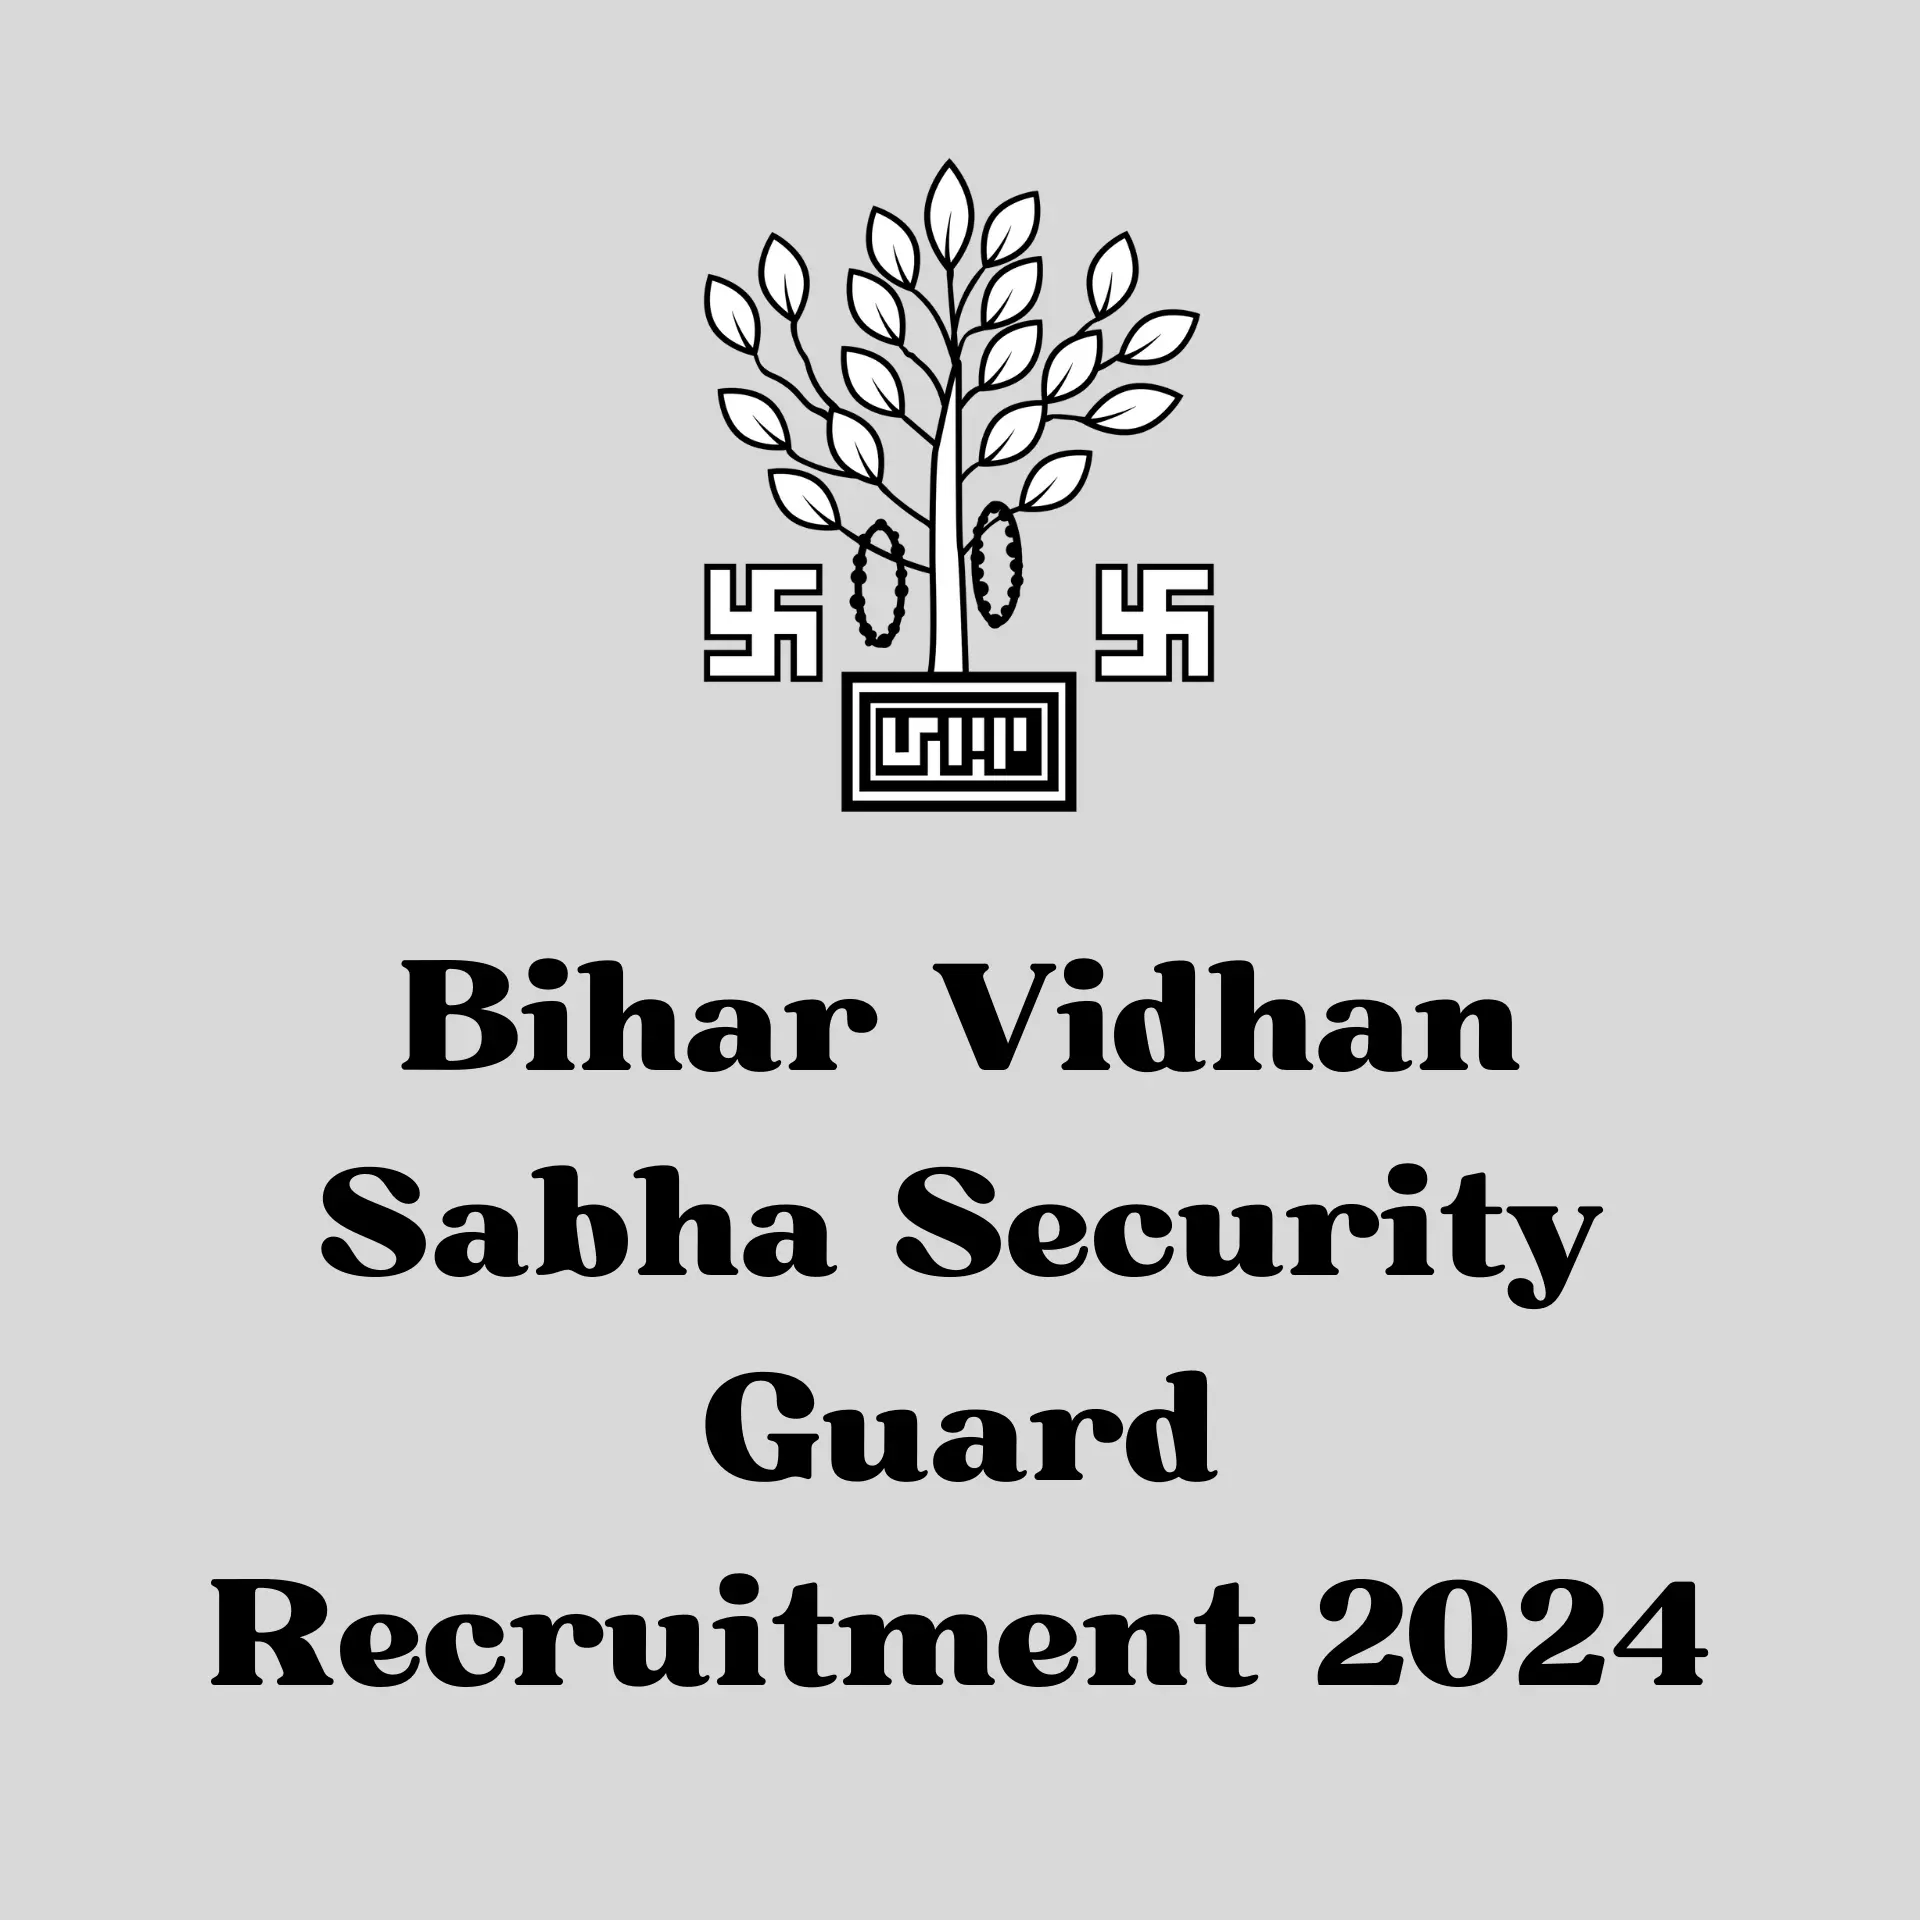 Bihar Vidhan Sabha Security Guard Recruitment 2024